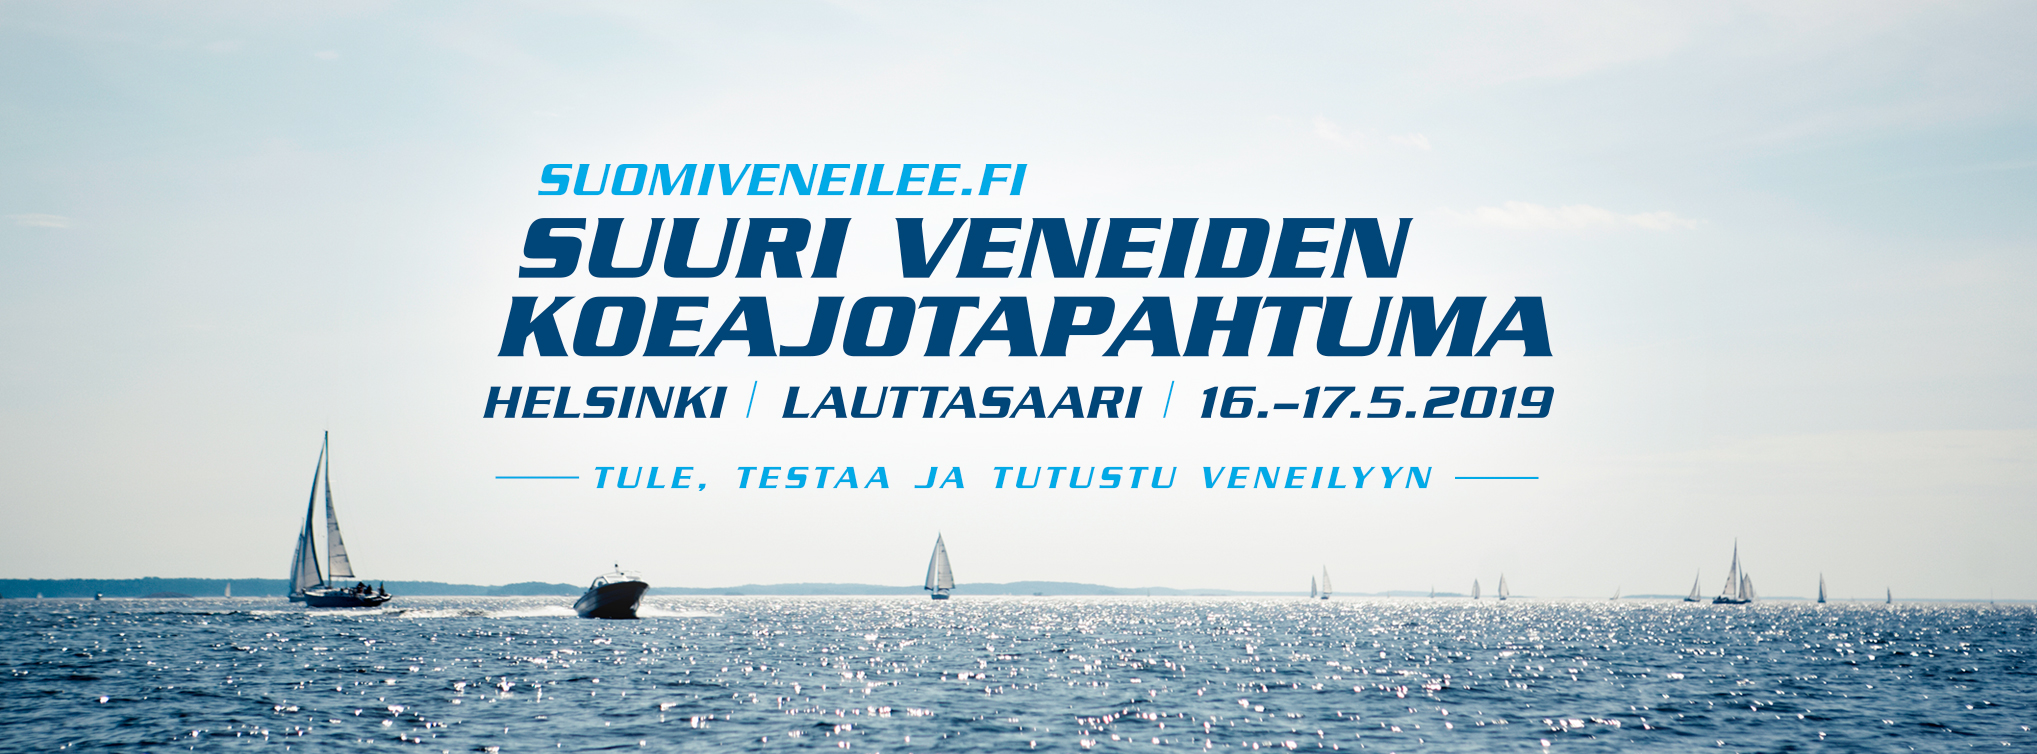 suomiveneilee.fi Lauttasaaressa 16.-17.2.2019